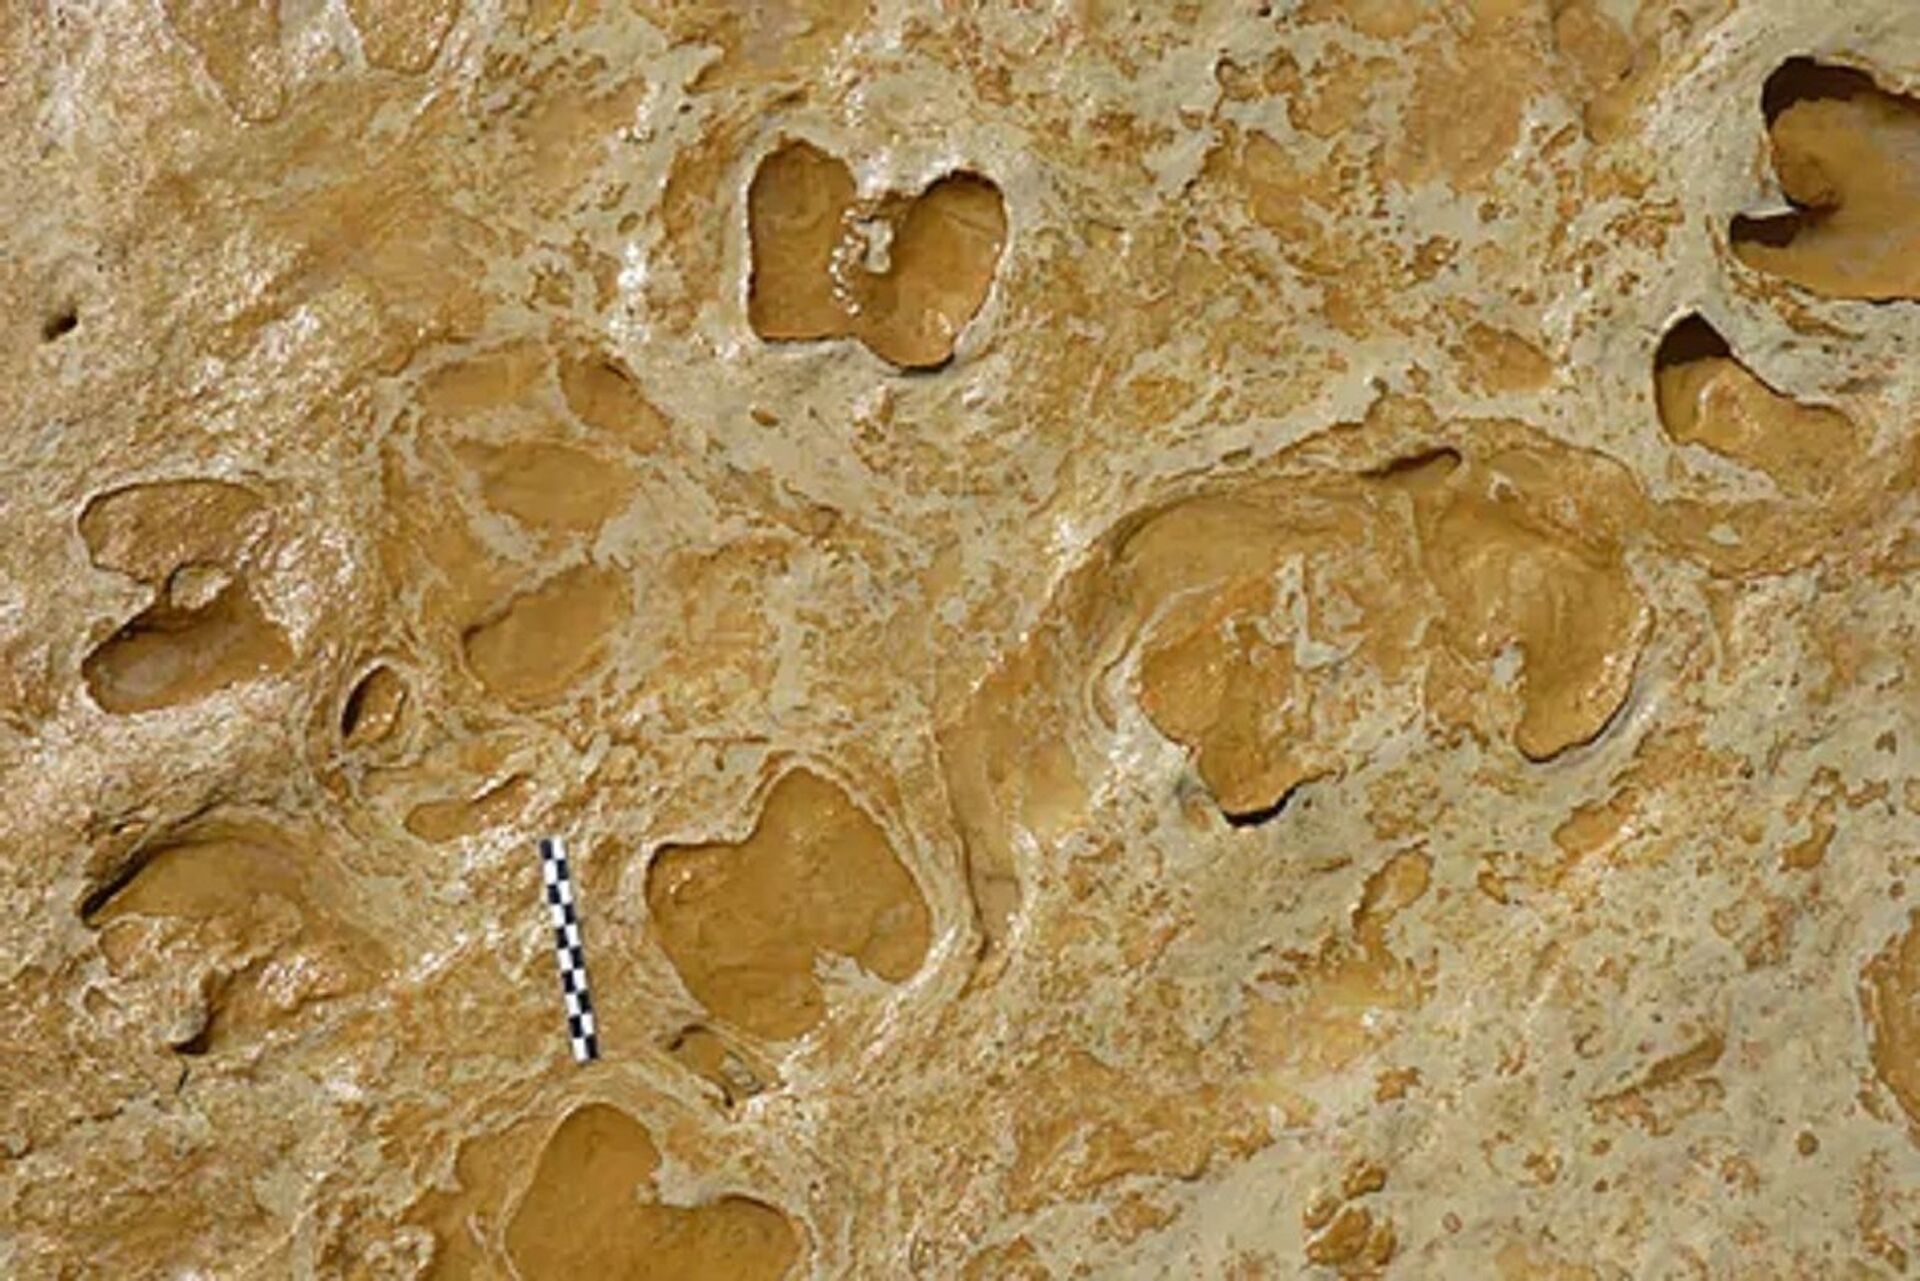 Pegadas mais antigas já vistas de Neandertais são encontradas na península ibérica (FOTOS) - Sputnik Brasil, 1920, 07.02.2021